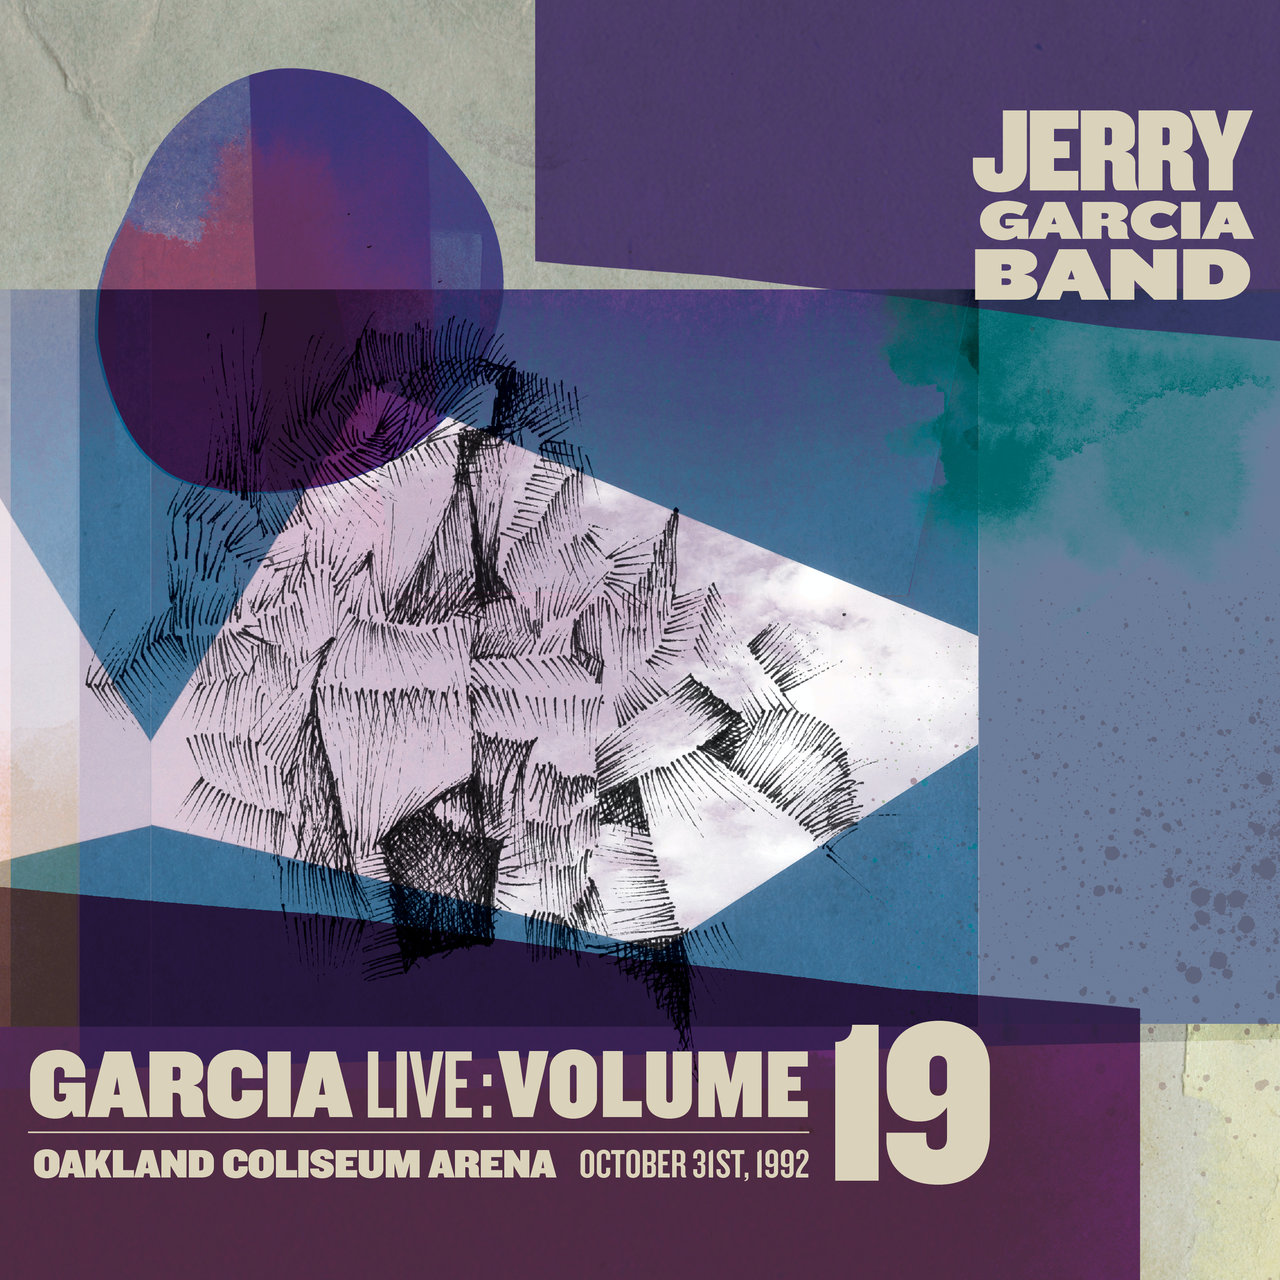 Jerry Garcia Band – GarciaLive Volume 19: October 31st, 1992 Oakland Coliseum Arena (2017) [FLAC 24bit/44,1kHz]